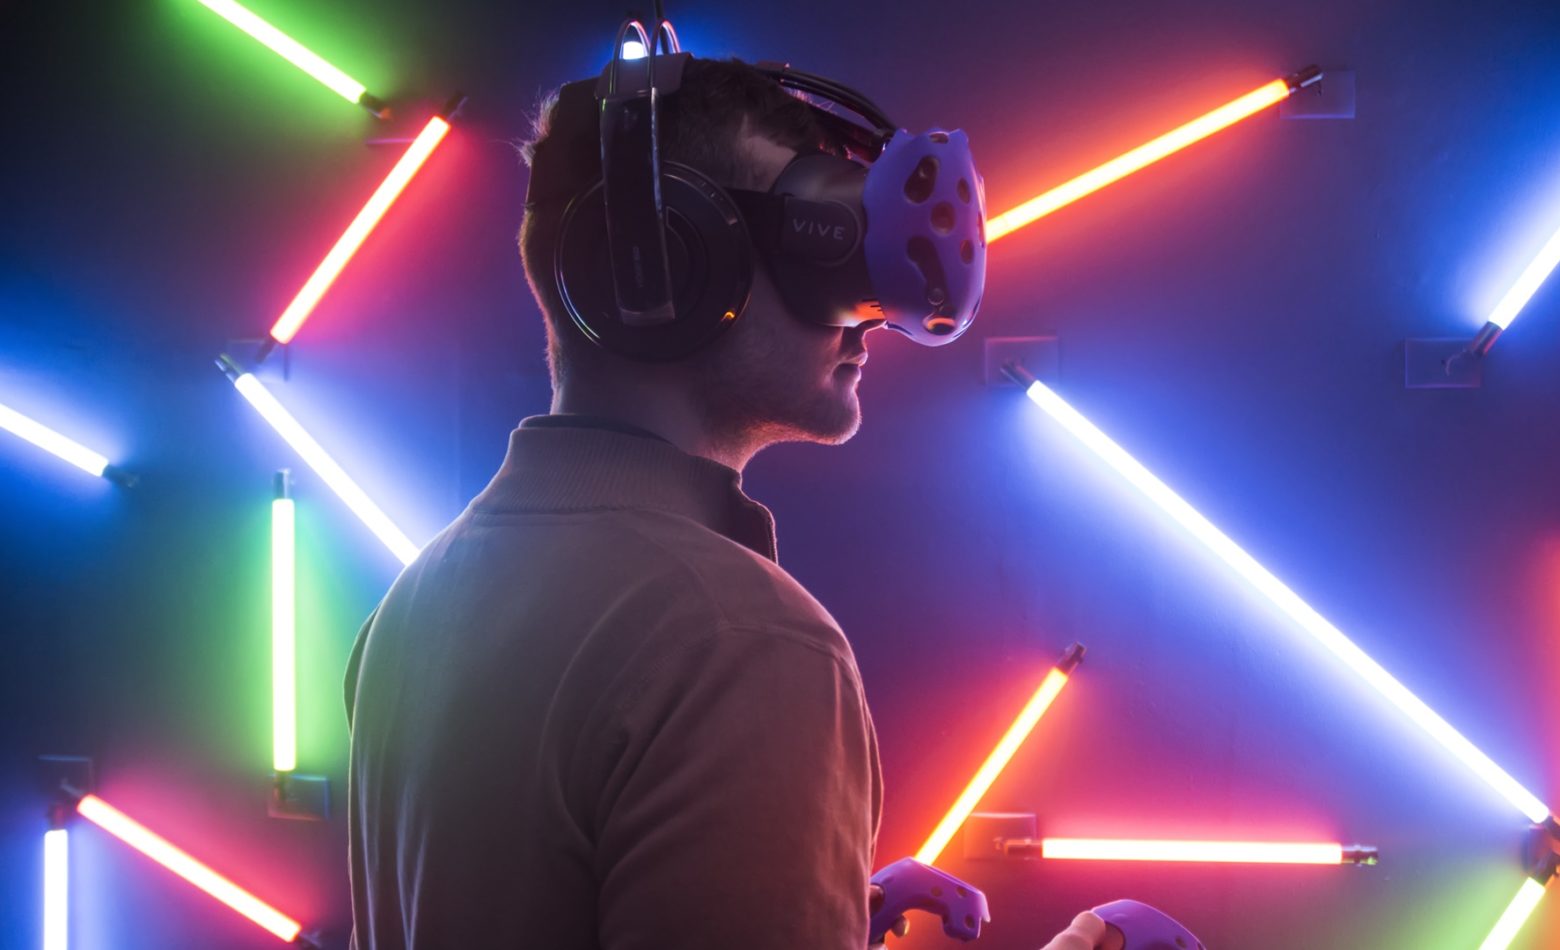 Pioneiro em Curitiba, Checkpoint VR quer “democratizar a realidade virtual”